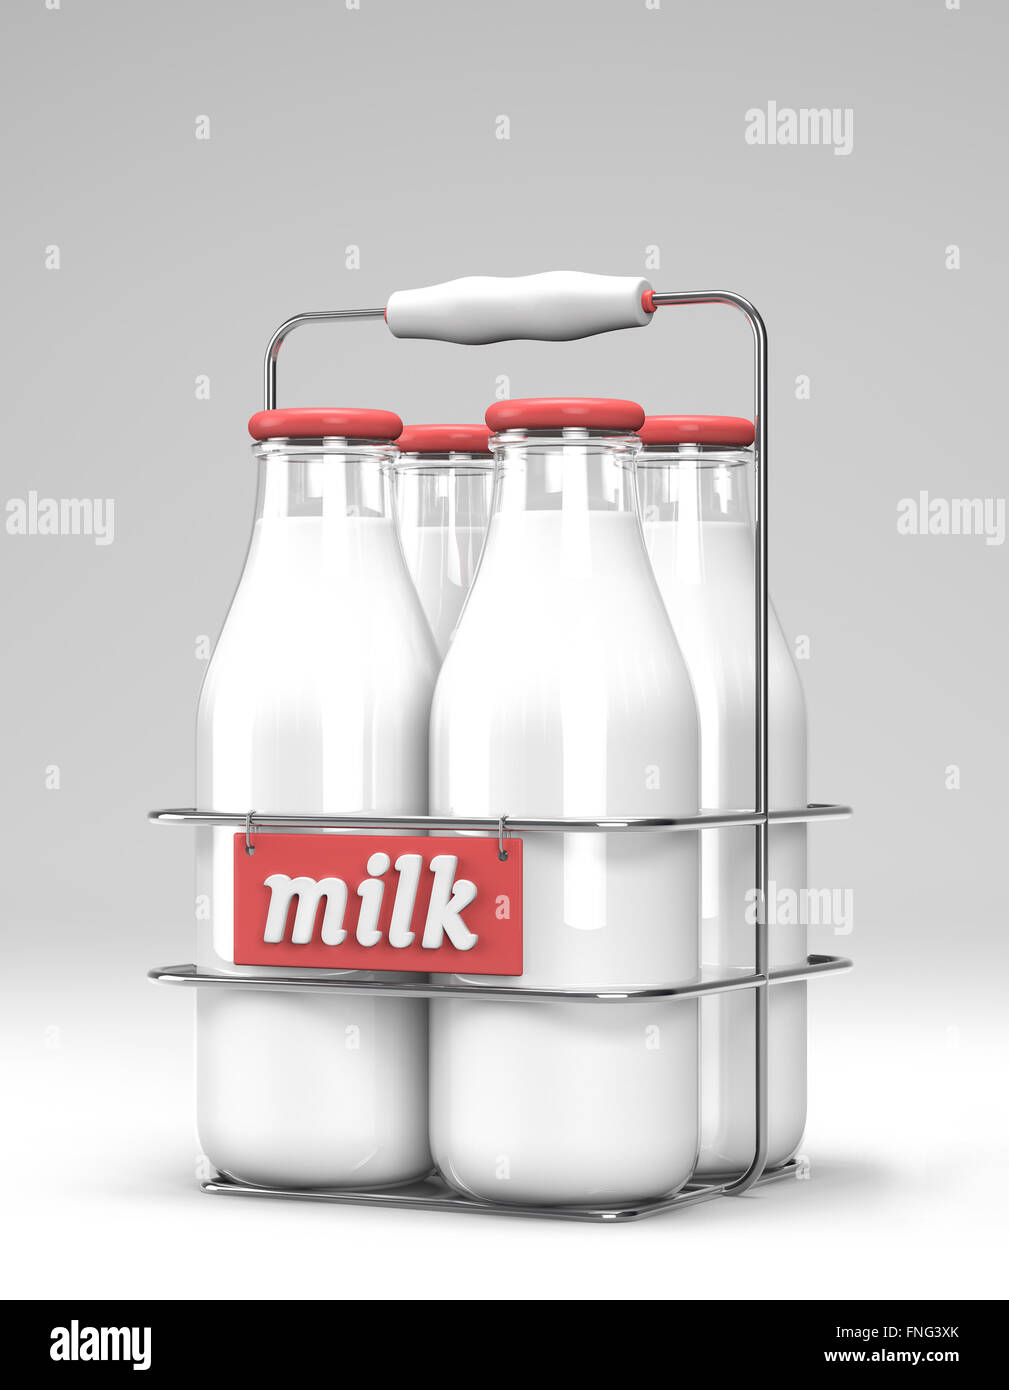 Cuatro botellas de leche de vidrio con tapas de luz roja en un estuche metálico con soporte y leche de la palabra escrita en la parte delantera en blanco Foto de stock